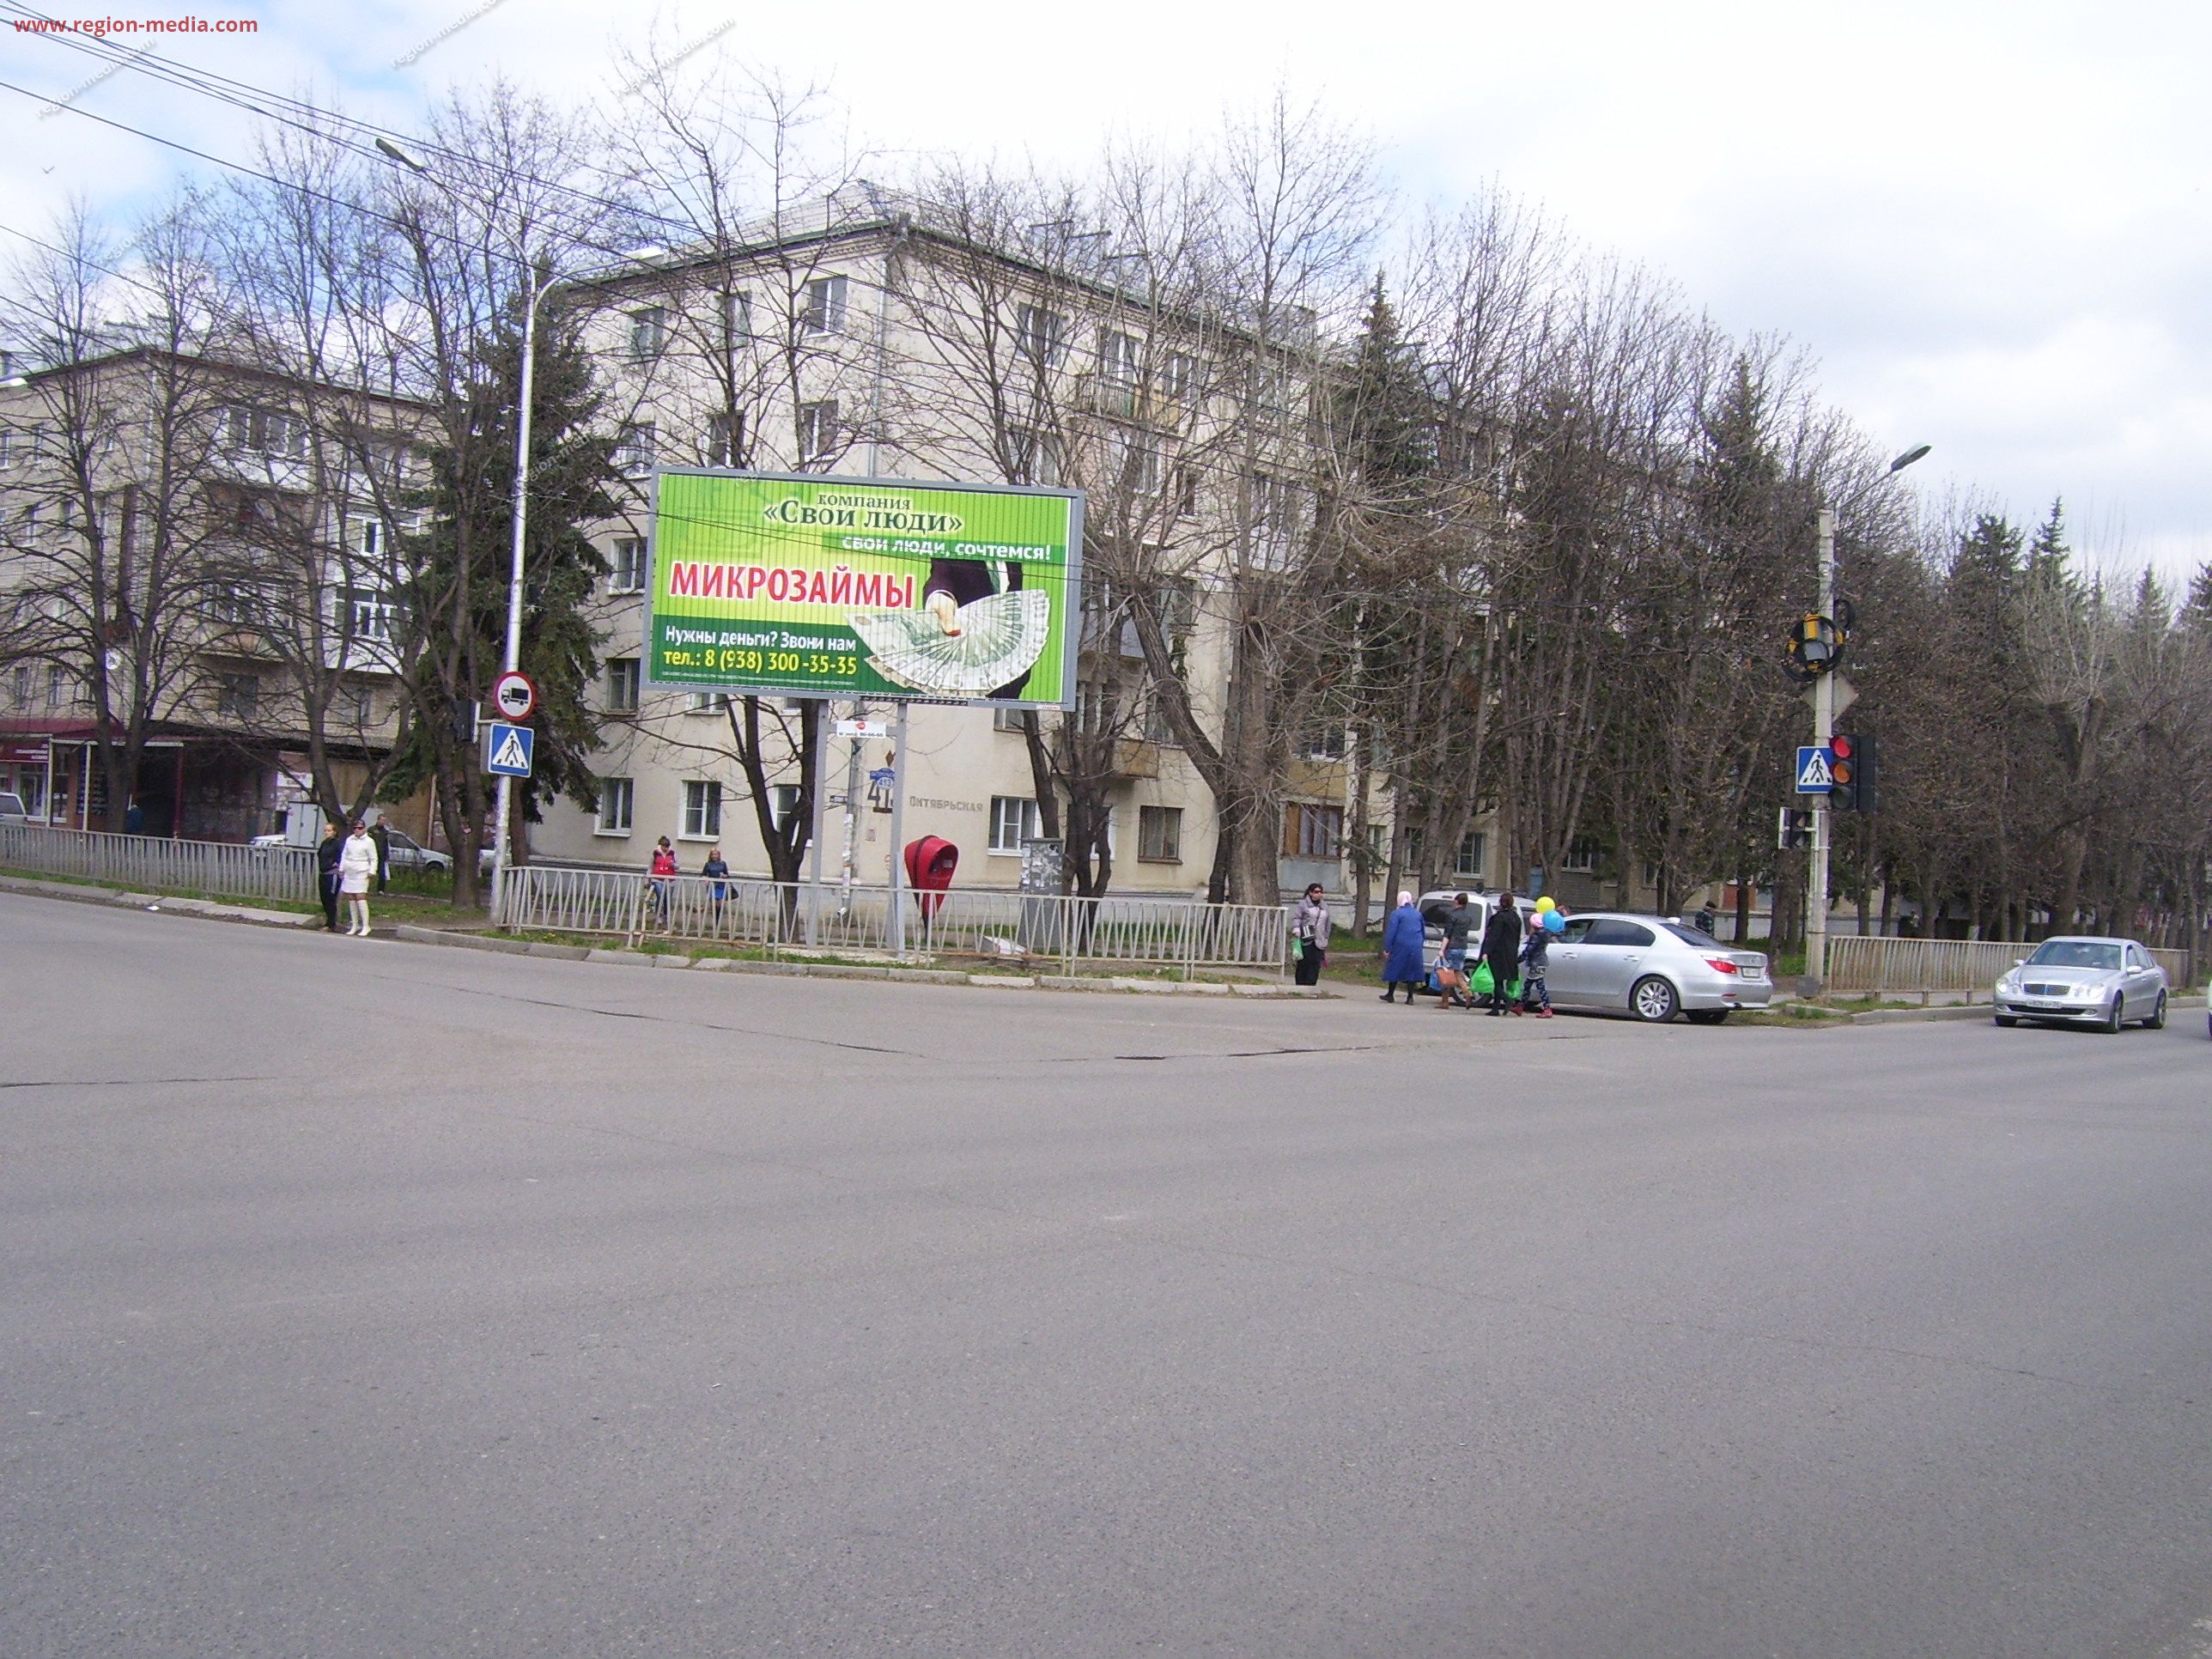 Размещение рекламы компании "Свои люди" на щитах 3х6 в городе Ессентуки